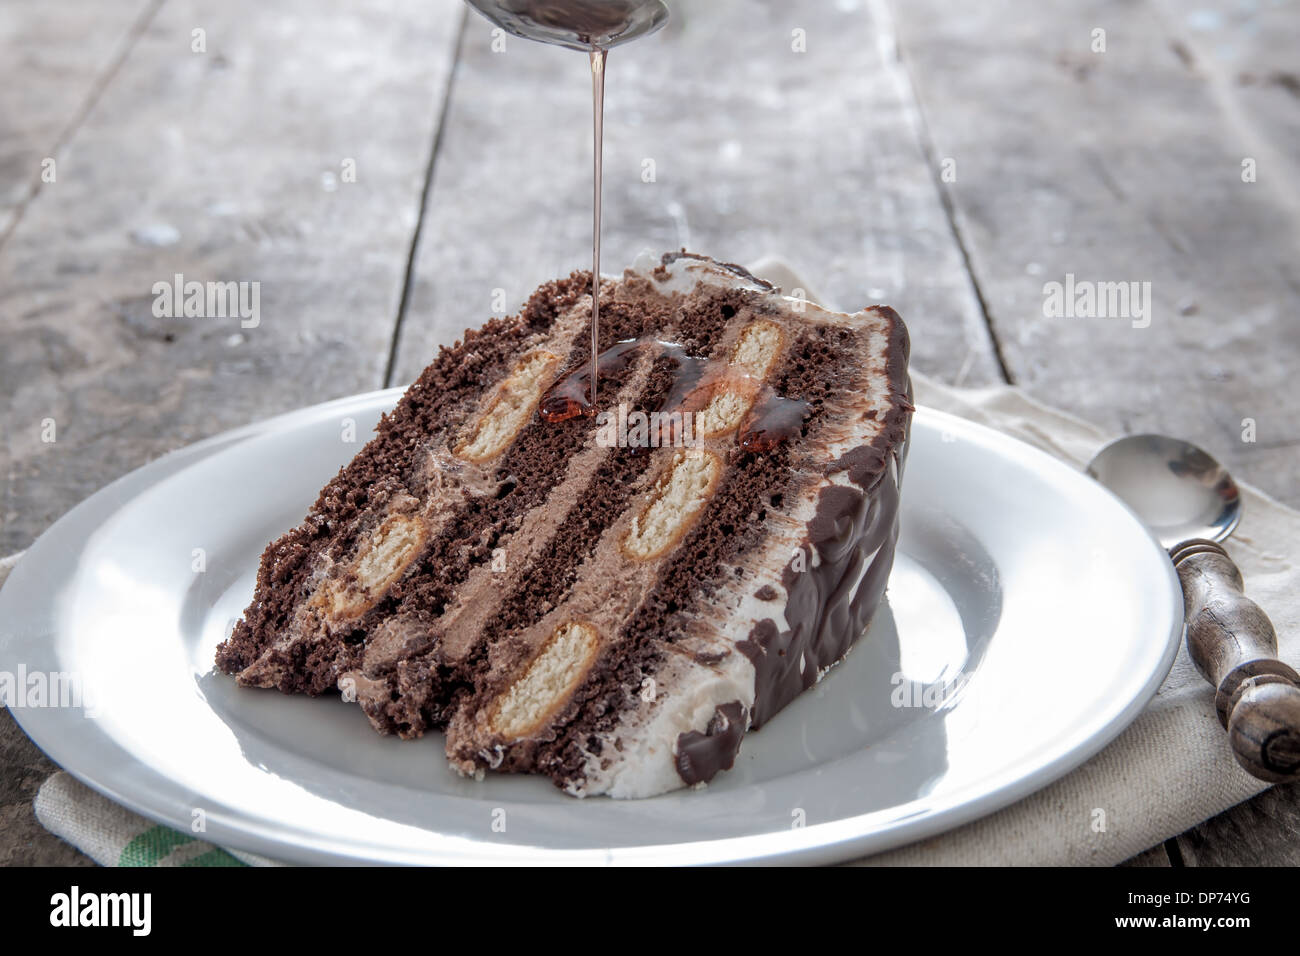 Tranche de gâteau au chocolat sur une assiette, Close up Banque D'Images